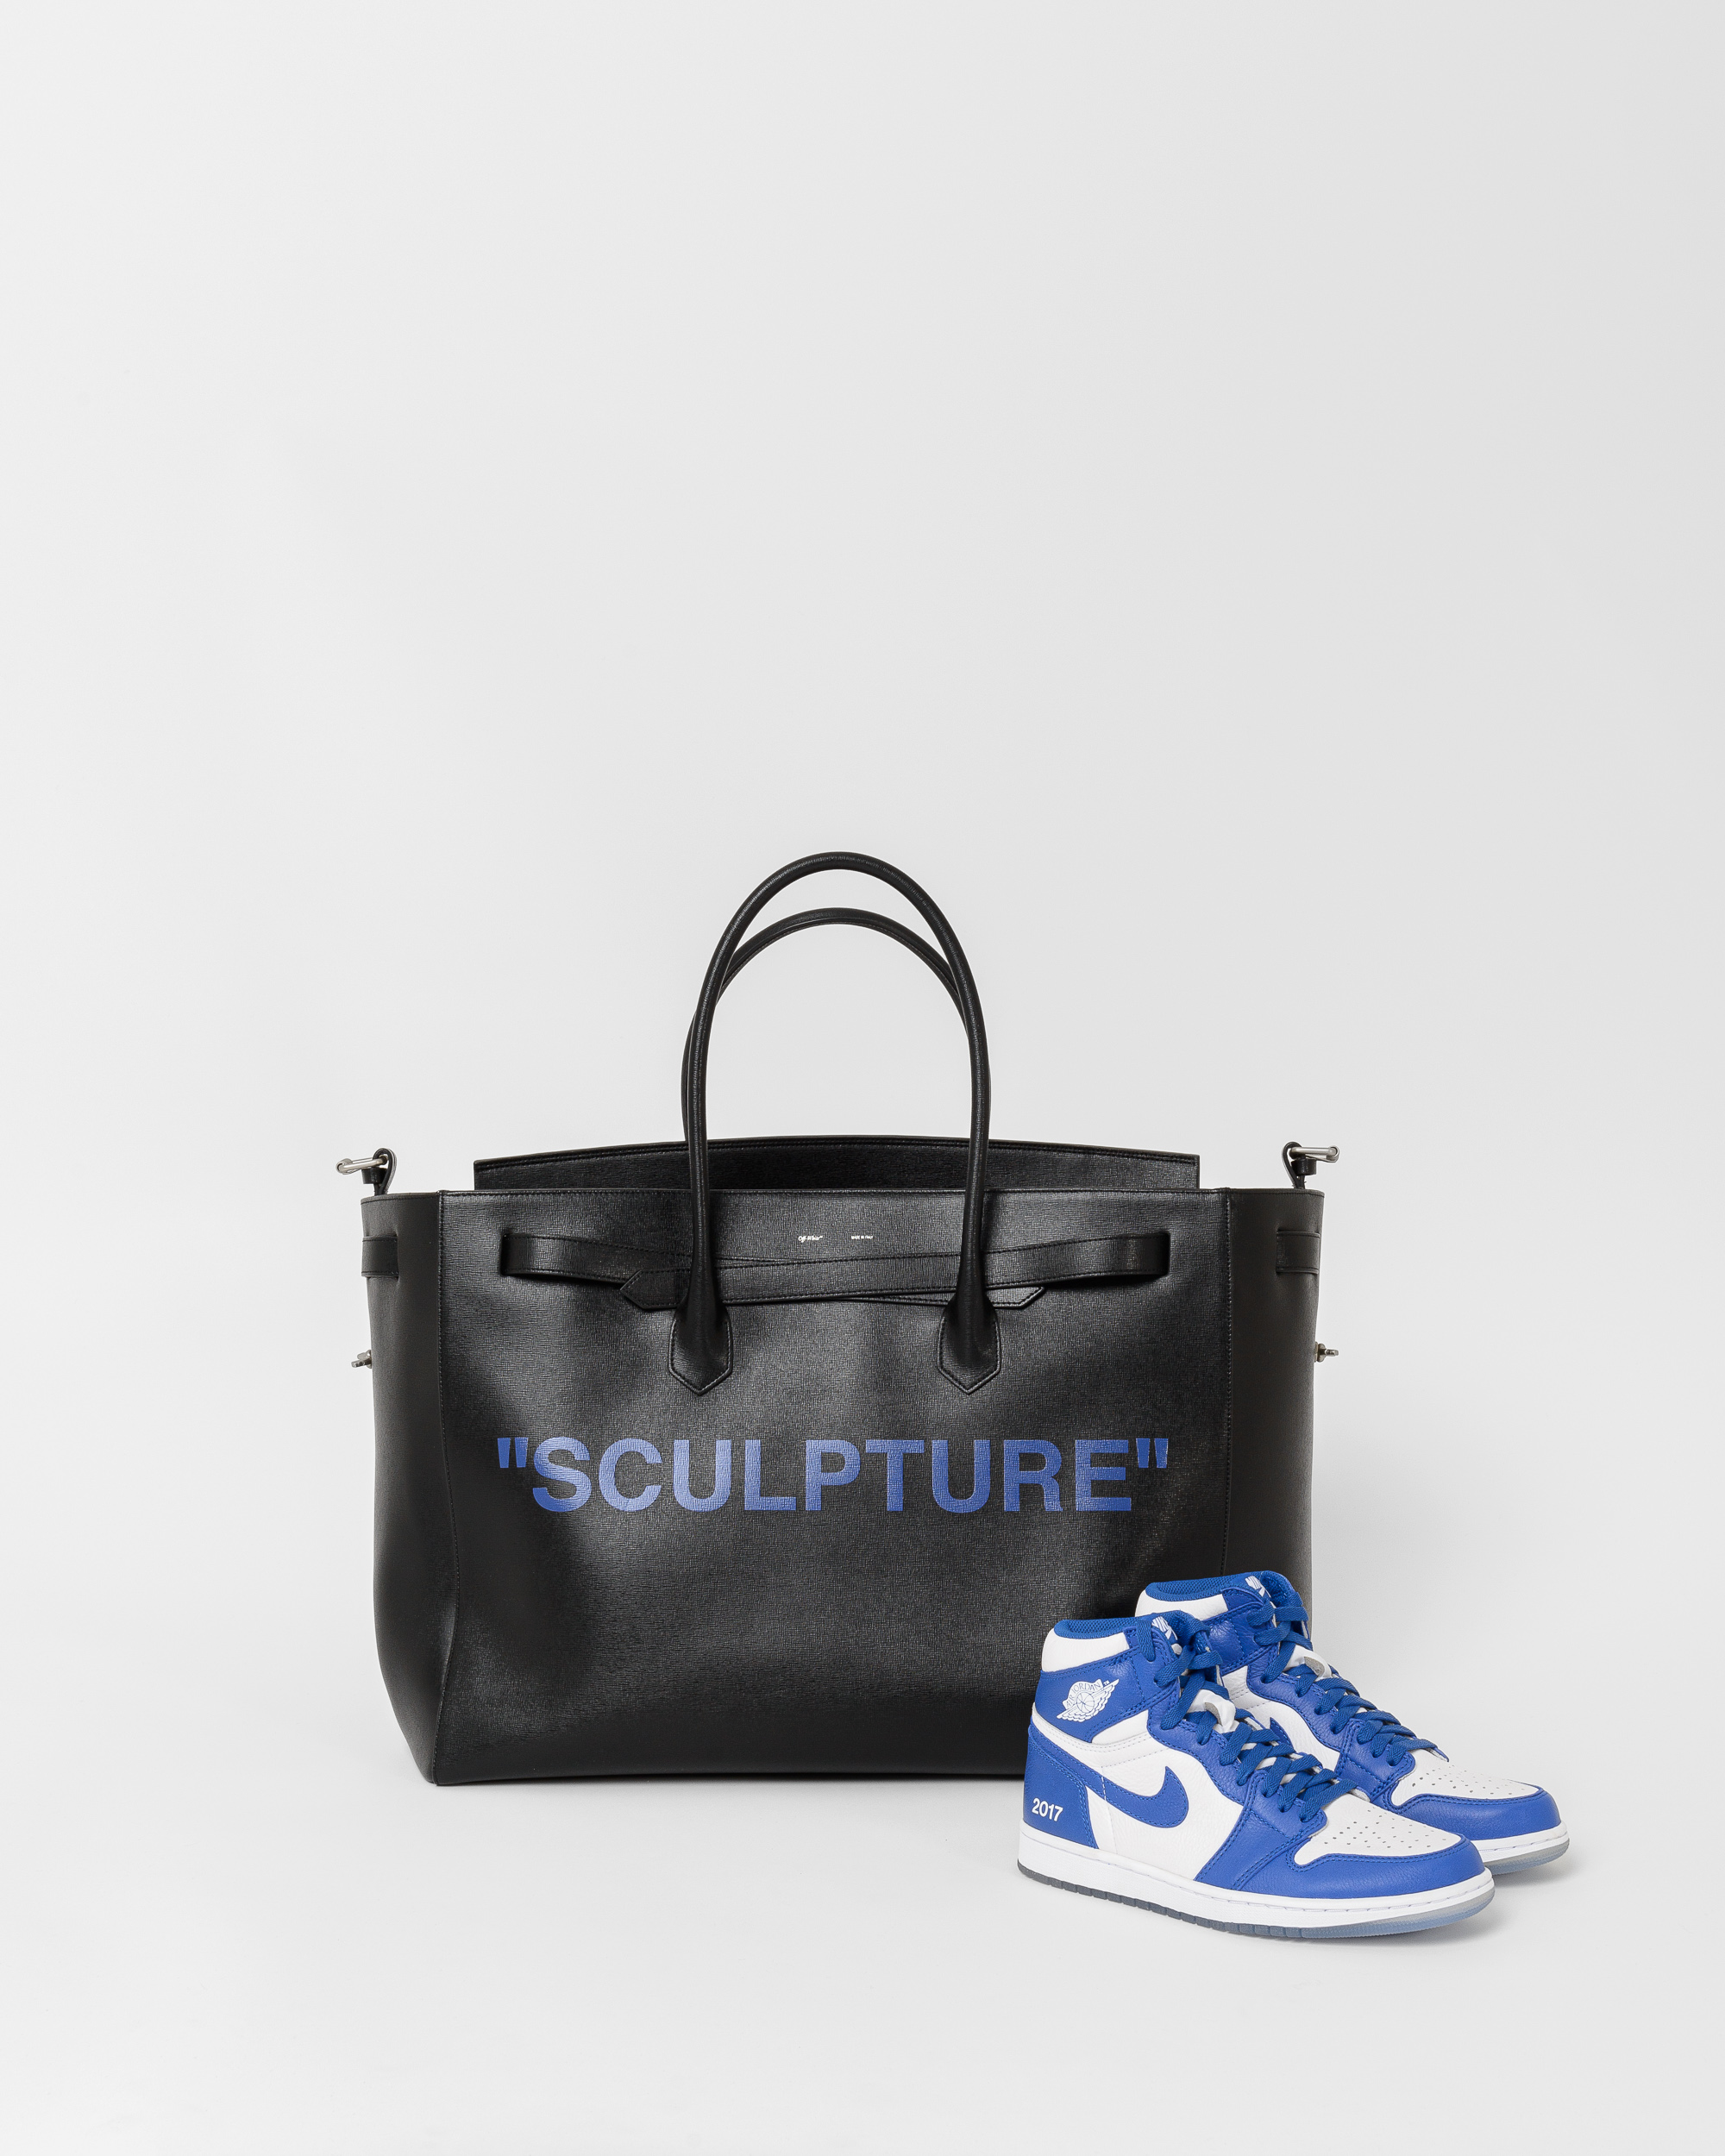 OFF-WHITE X colette Limited Edition SCULPTURE Bag, AIR JORDAN 1 X colette